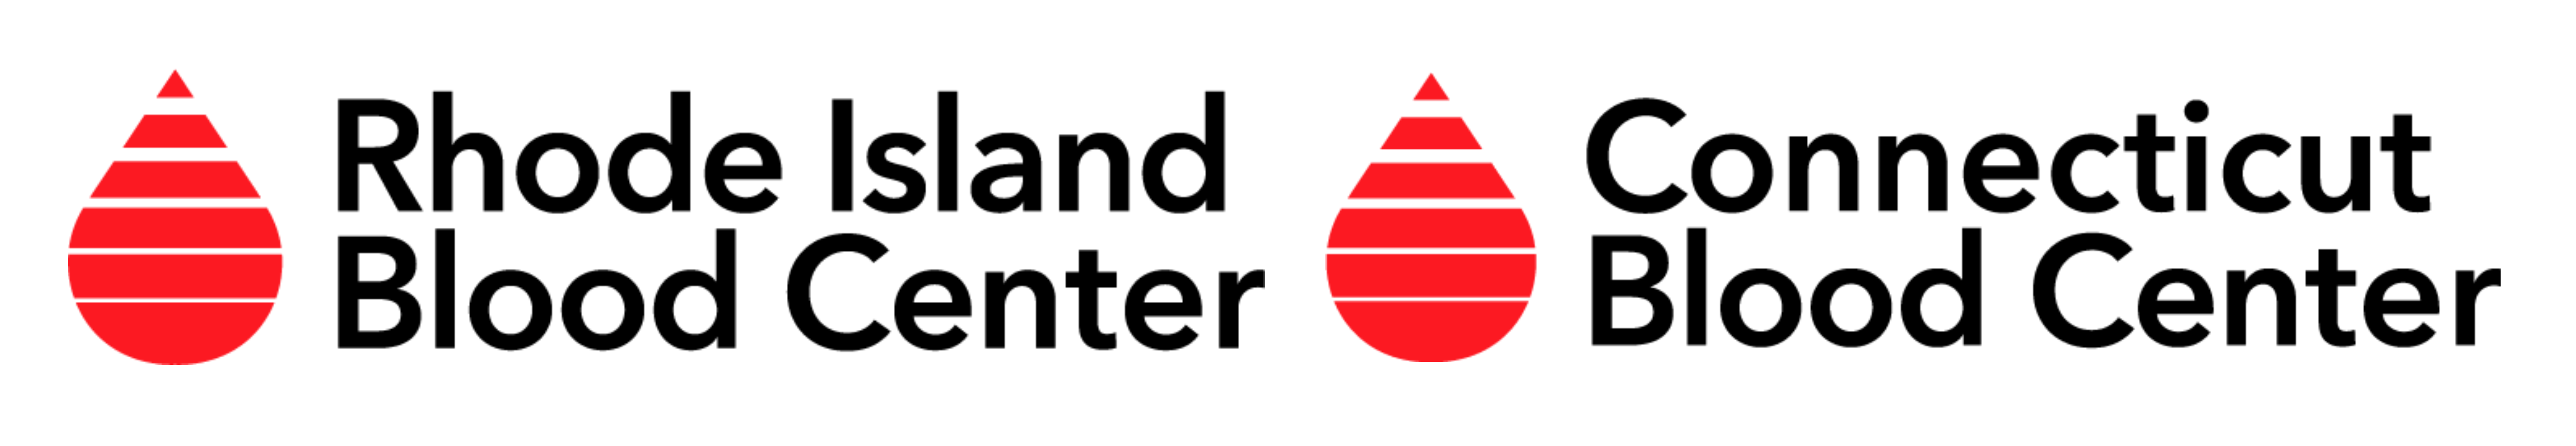 Rhode Island Blood Center / Connecticut Blood Center Logo